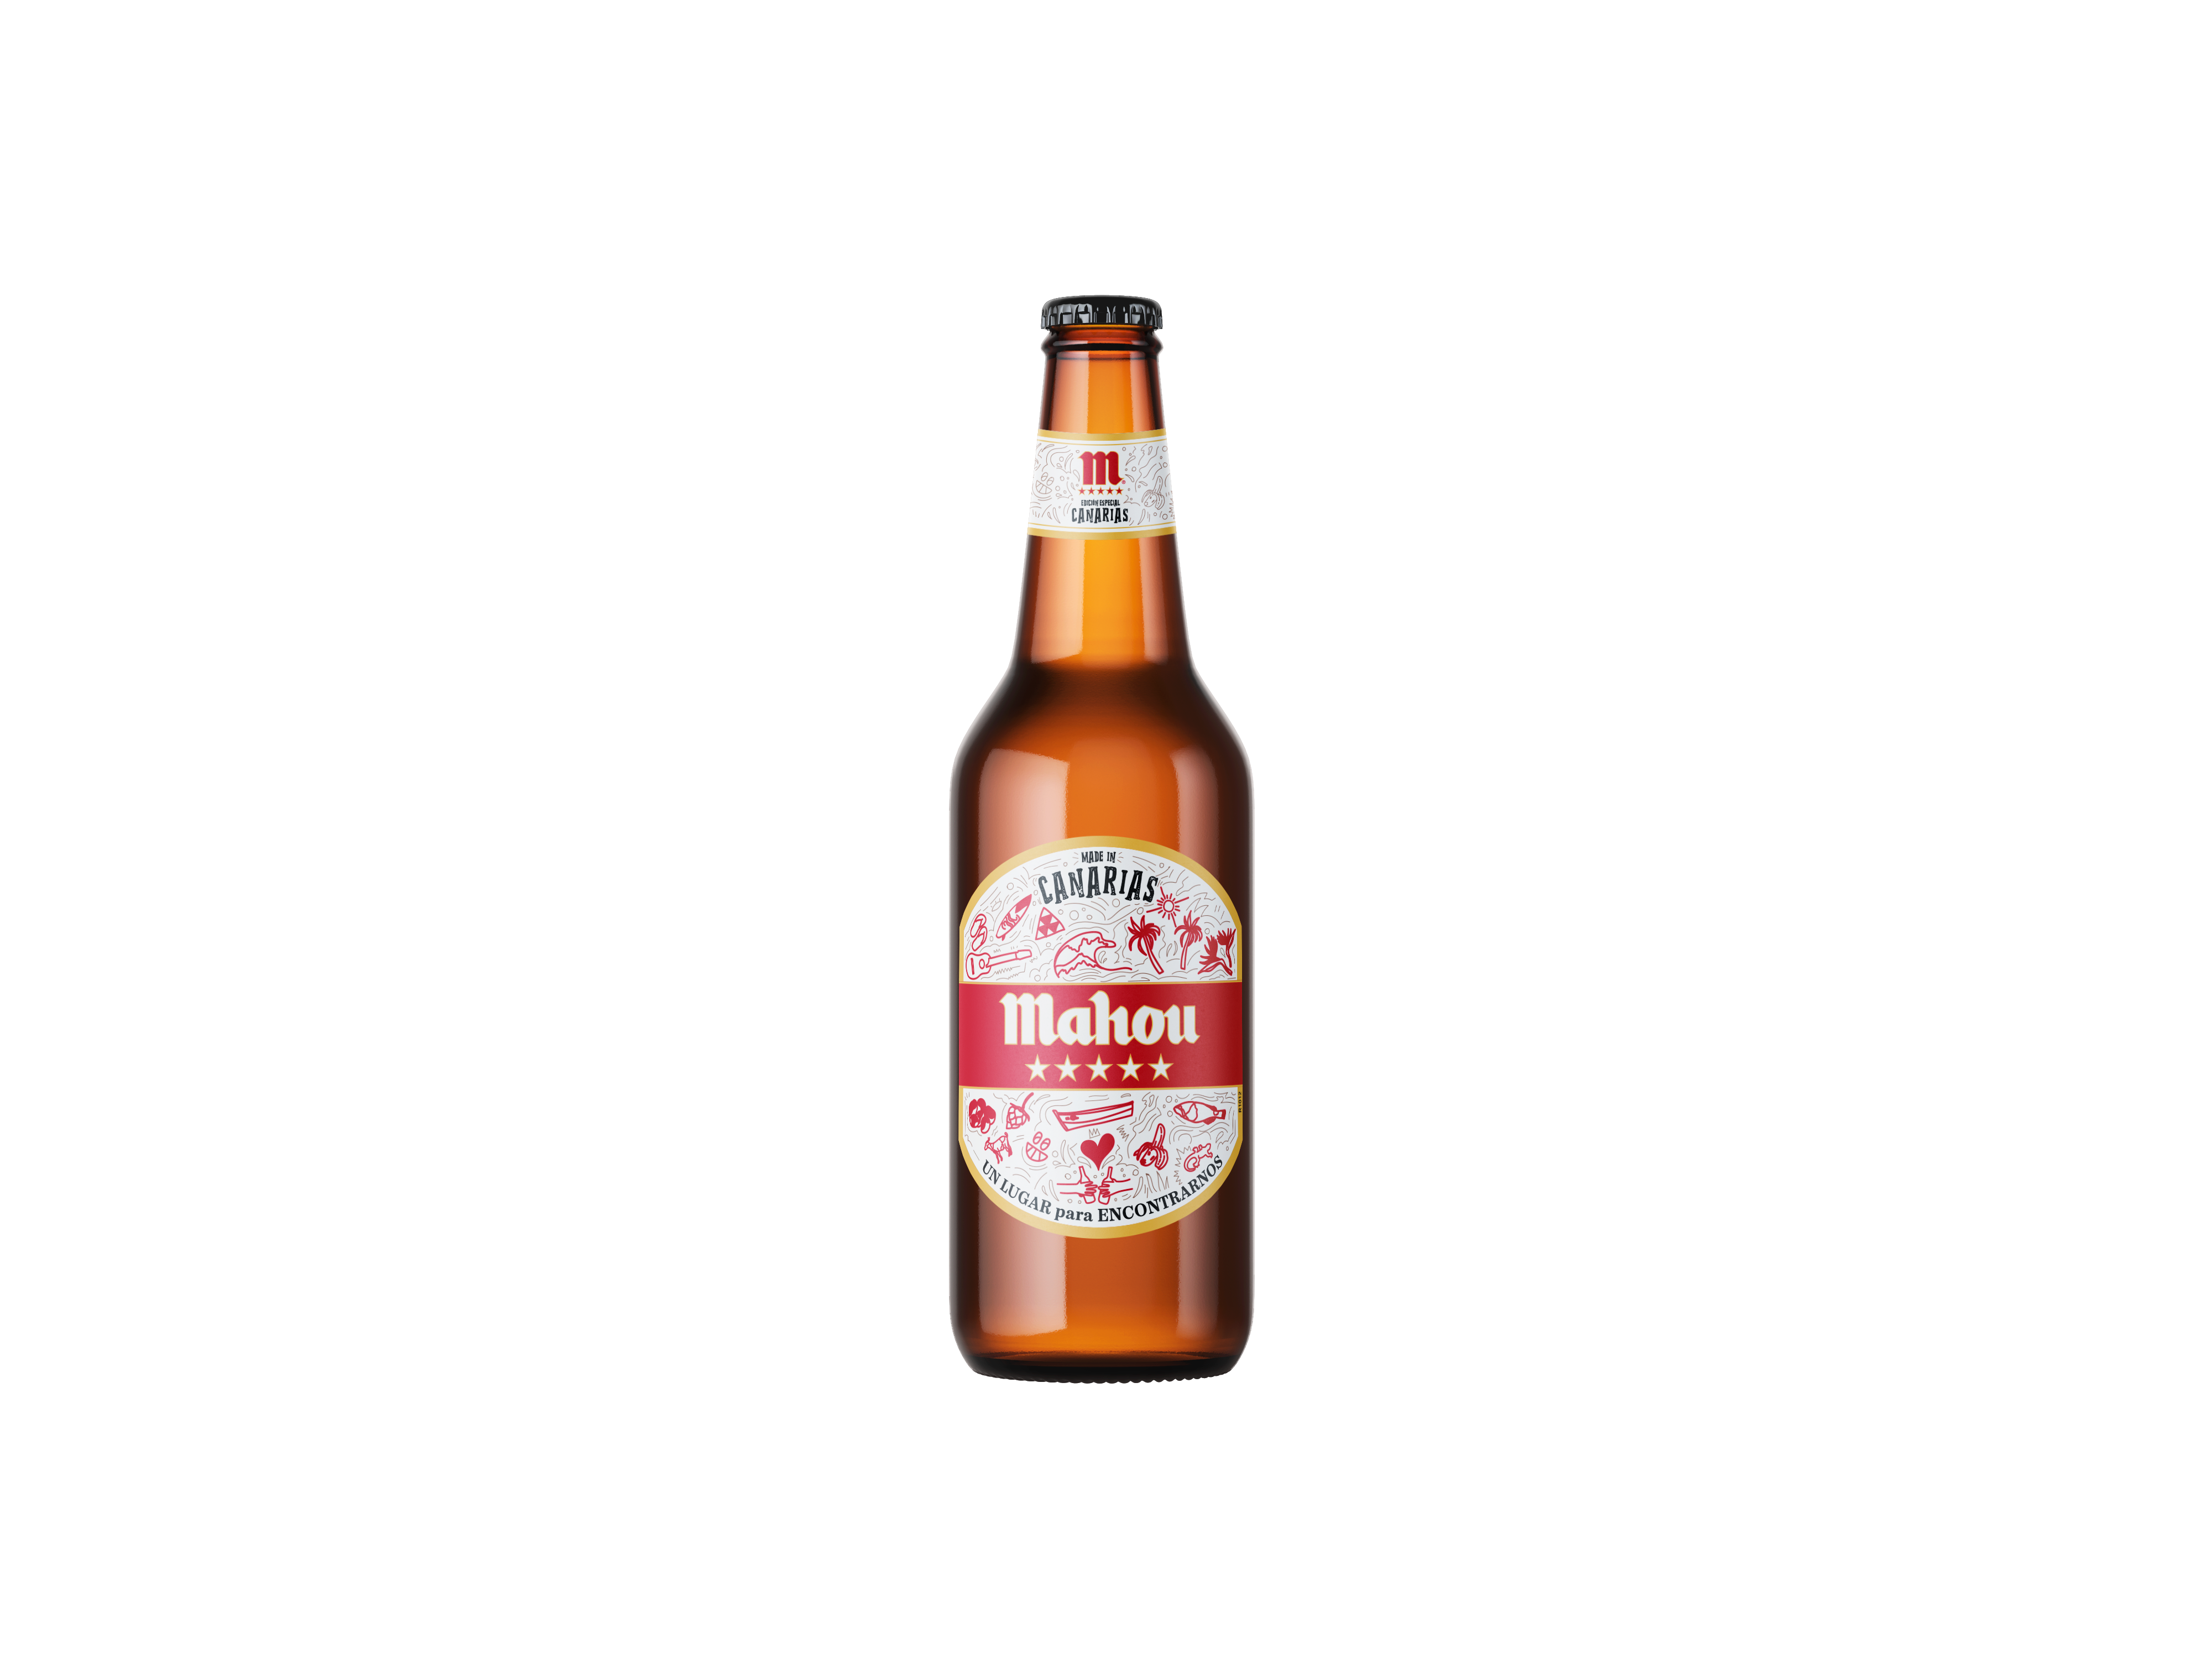 El mejor grifo de cerveza para casa: descubre por qué el modelo de Estrella  Galicia es el favorito de los amantes de la cerveza 